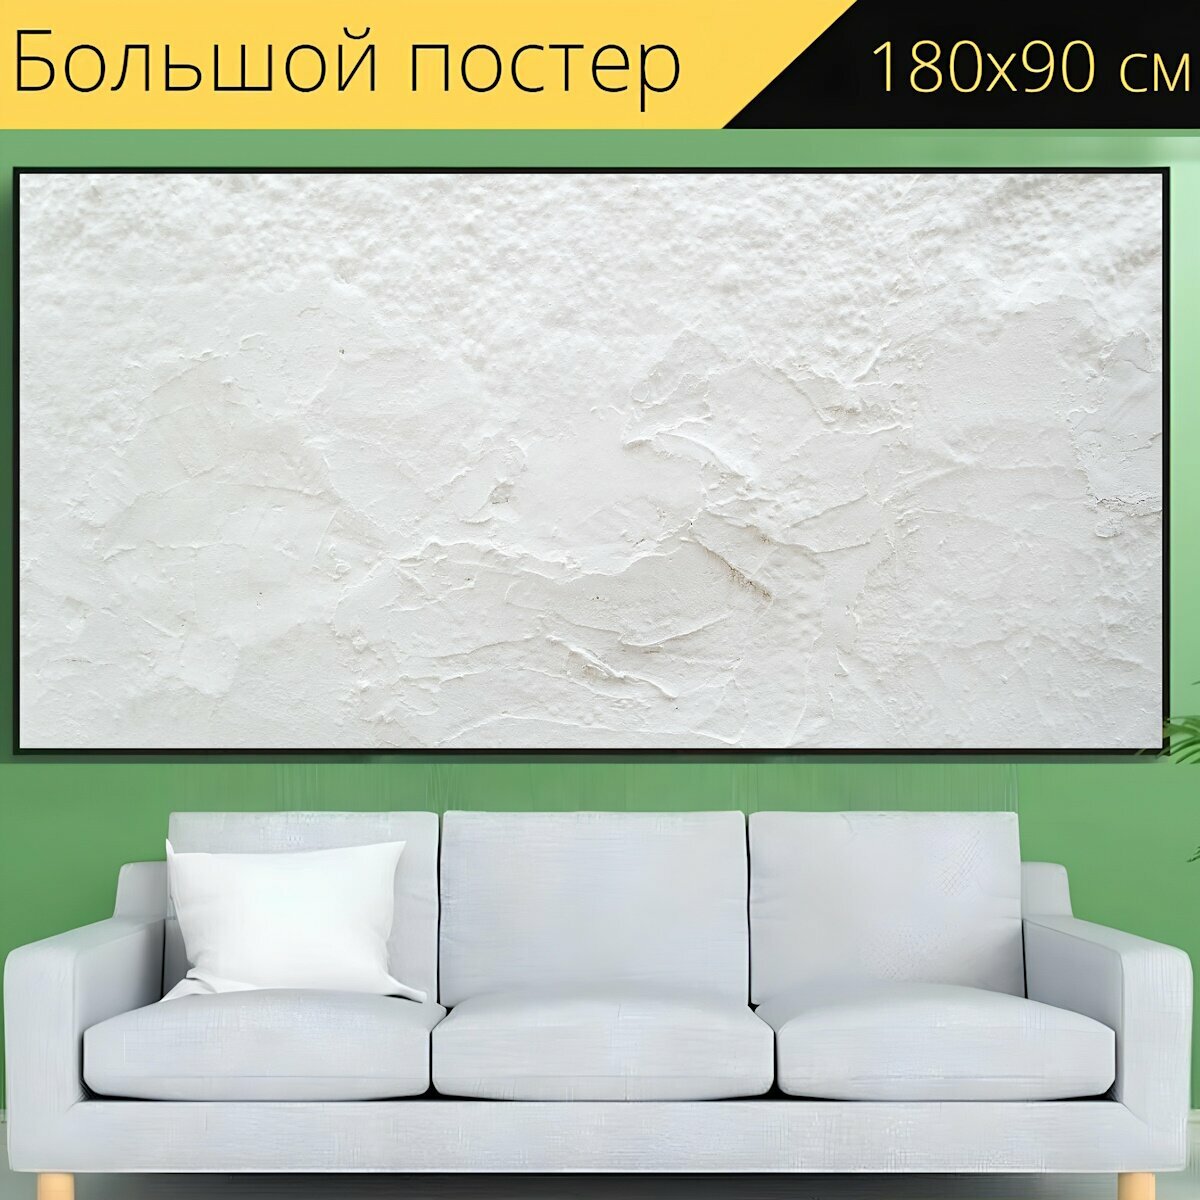 Большой постер "Белый, стена, текстуры" 180 x 90 см. для интерьера